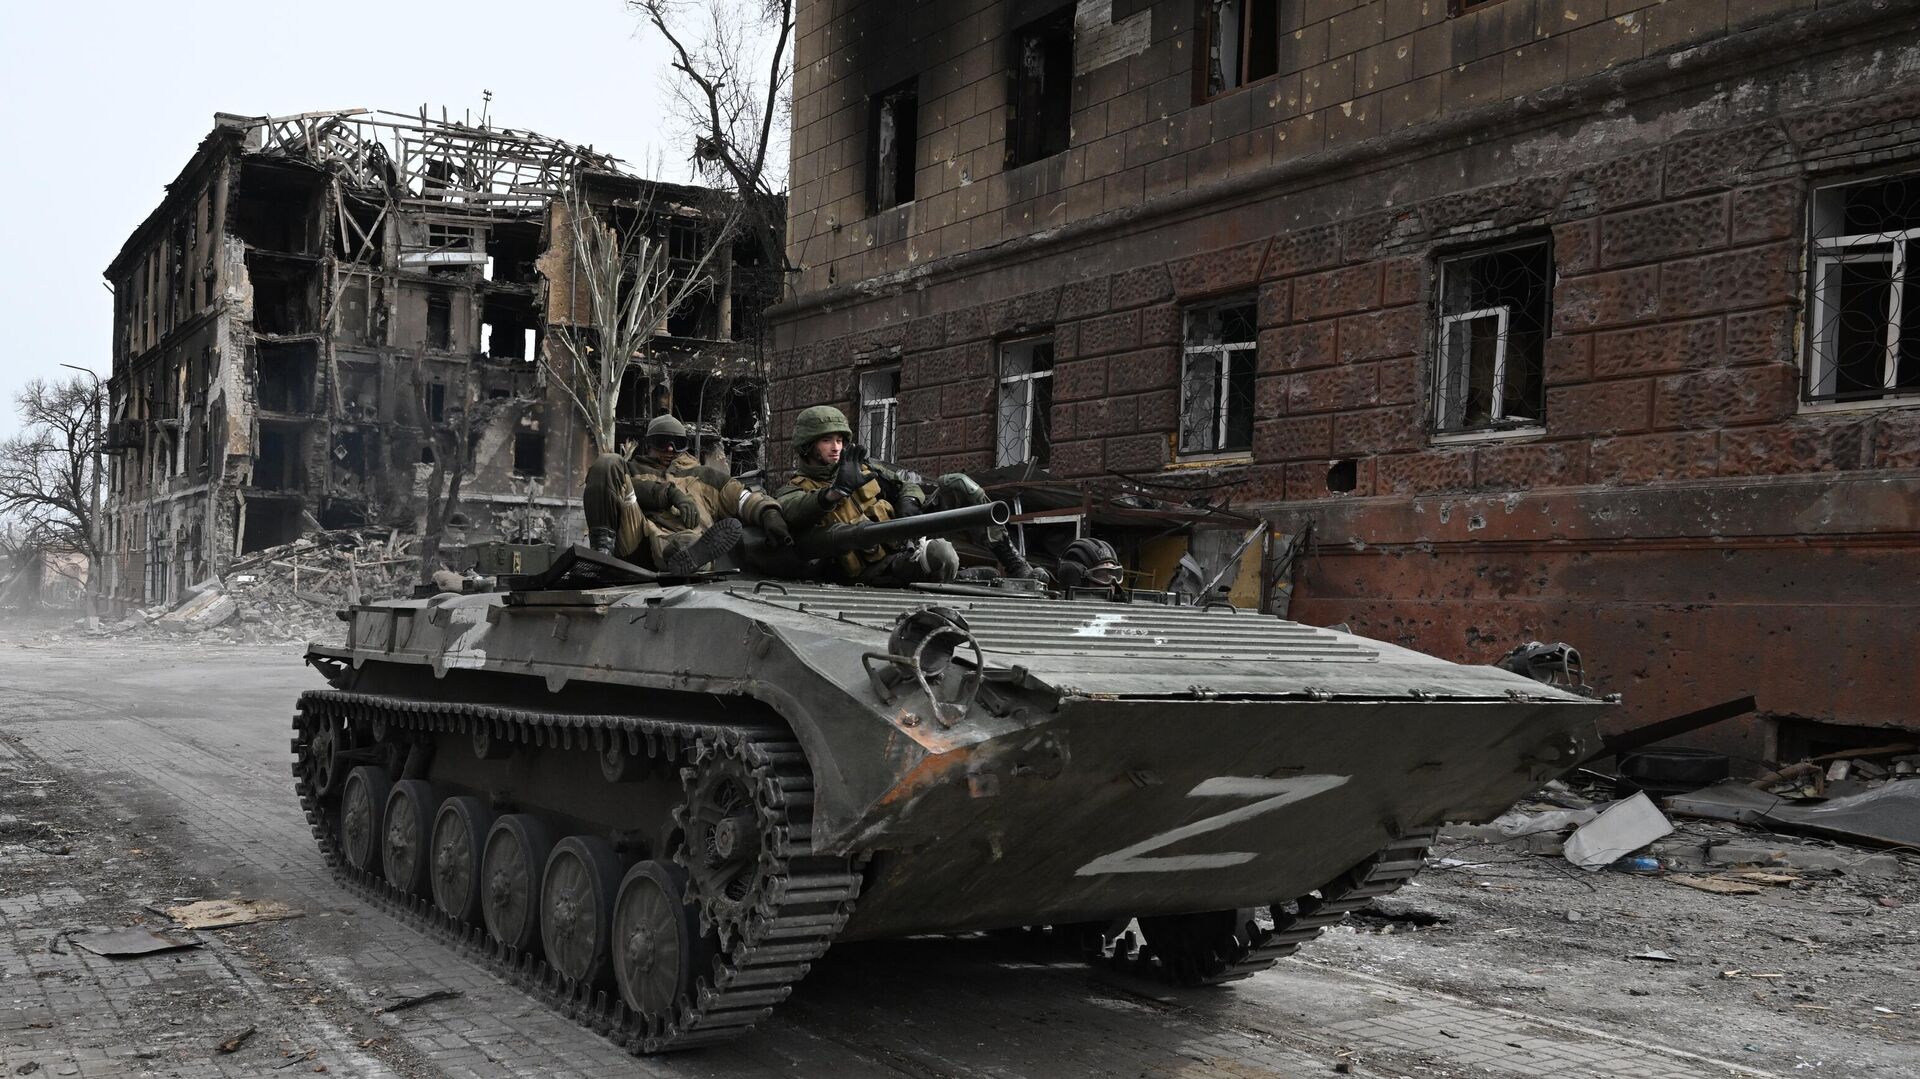 Xe chiến đấu bộ binh BMP-1 của quân đội DNR gần một tòa nhà dân cư bị phá hủy ở Mariupol - Sputnik Việt Nam, 1920, 06.05.2022